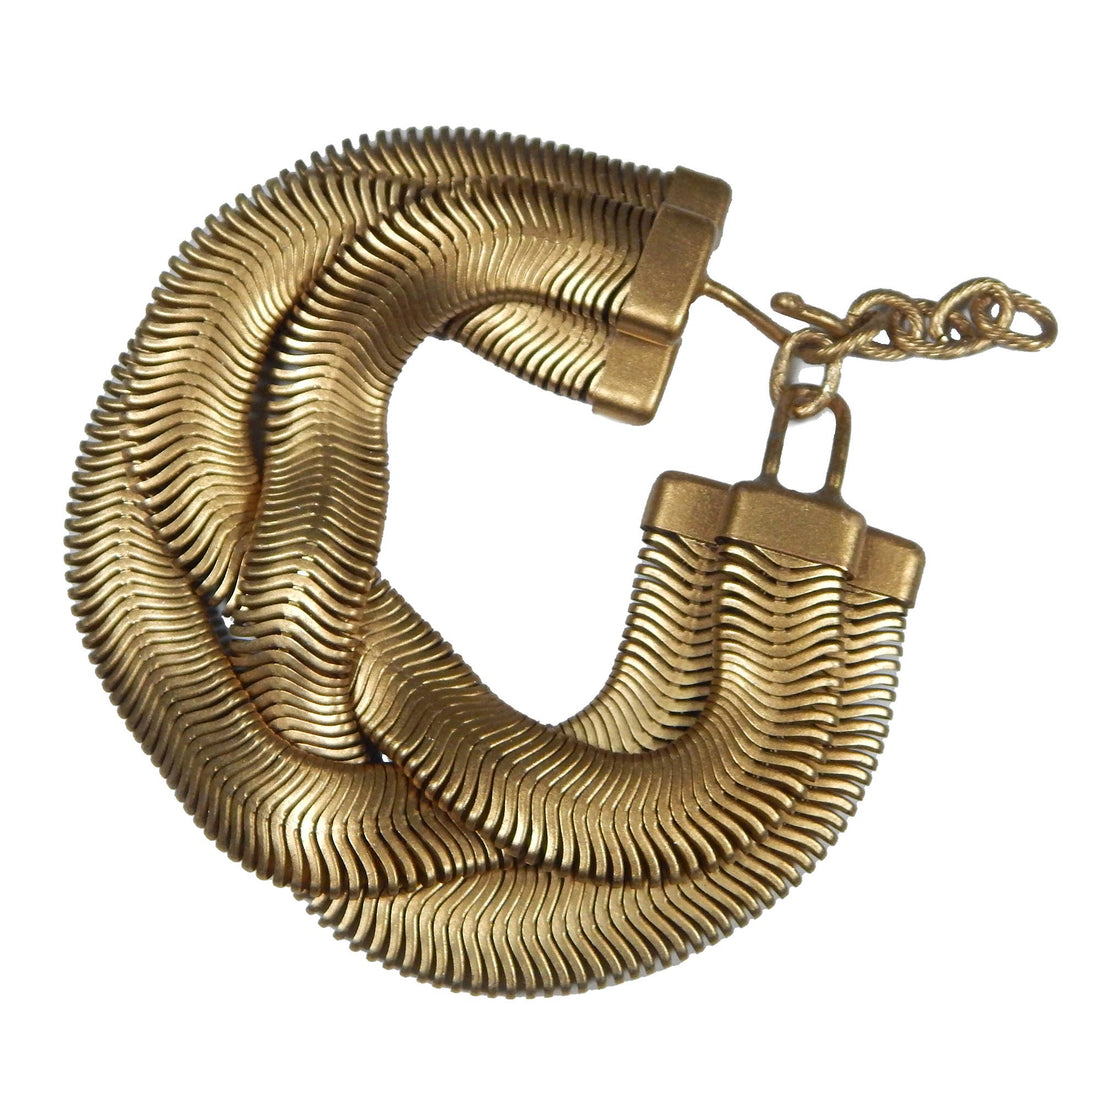 Triple Fern Chain Crossed Bracelet